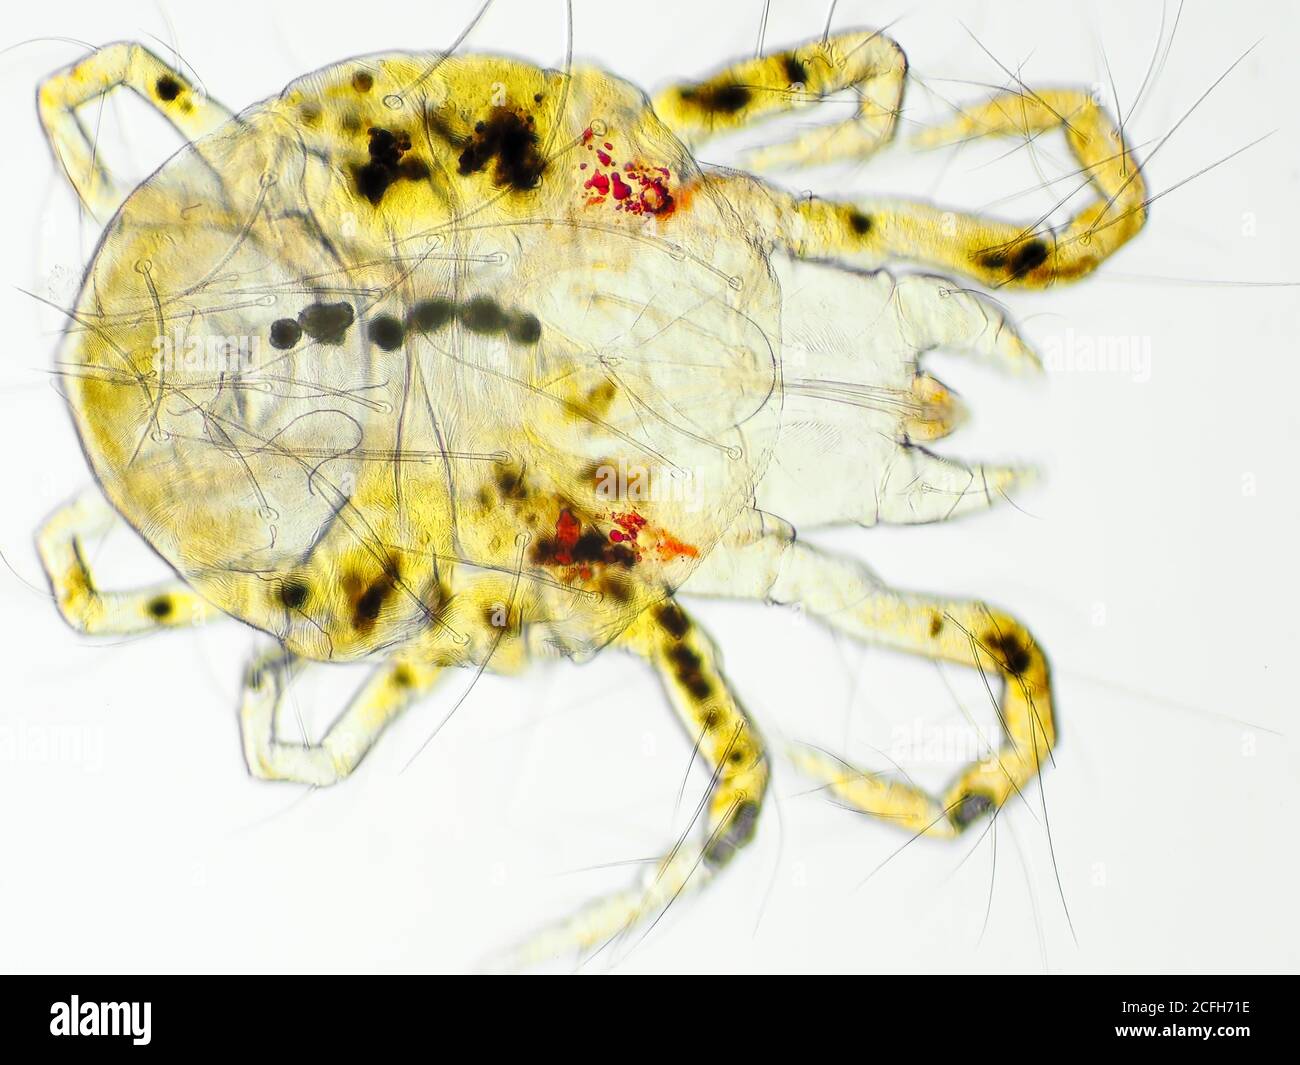 Ácaro de araña (probable ácaro de araña del Pacífico o ácaro de araña de Willamette) bajo el microscopio, el campo de visión horizontal es de aproximadamente 0,61 mm Foto de stock